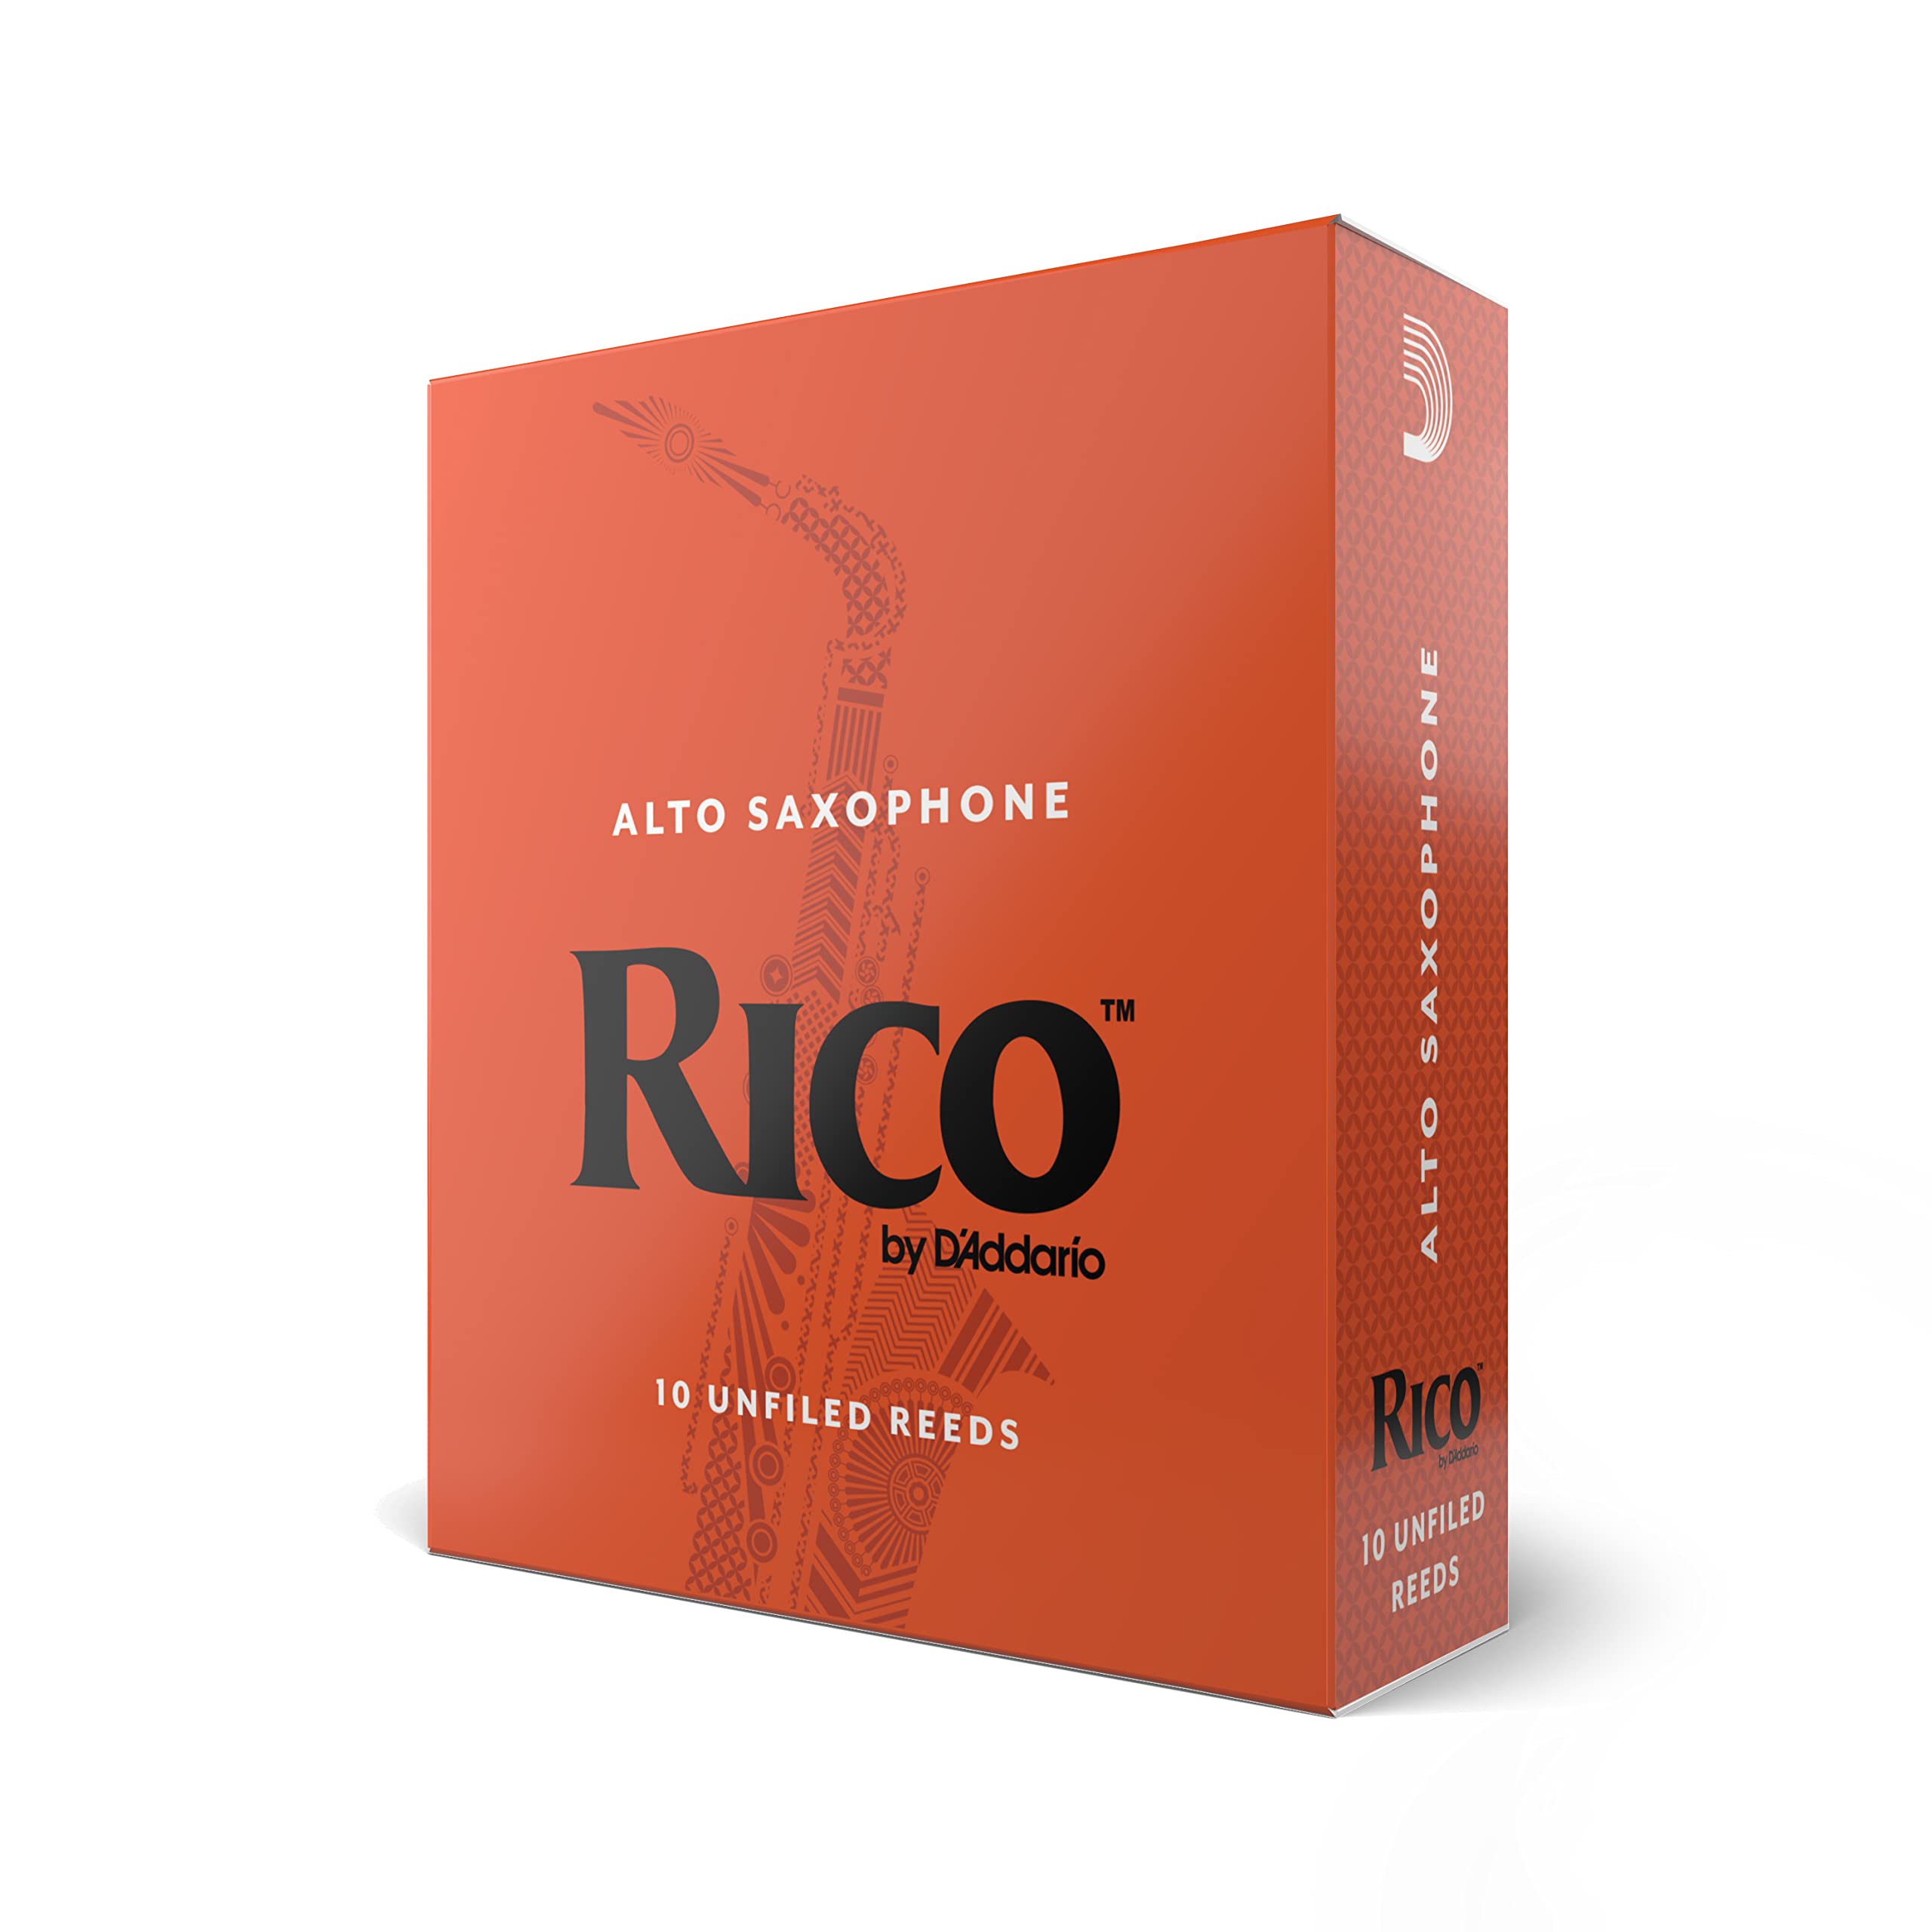 Rico by D'Addario Saxophon Blätter | Hochpräzise gefertigt | Alt Saxophon Blätter 1,5 Stärke | 3er-Packung | Warmer voller Ton | Angenehmes Spielgefühl